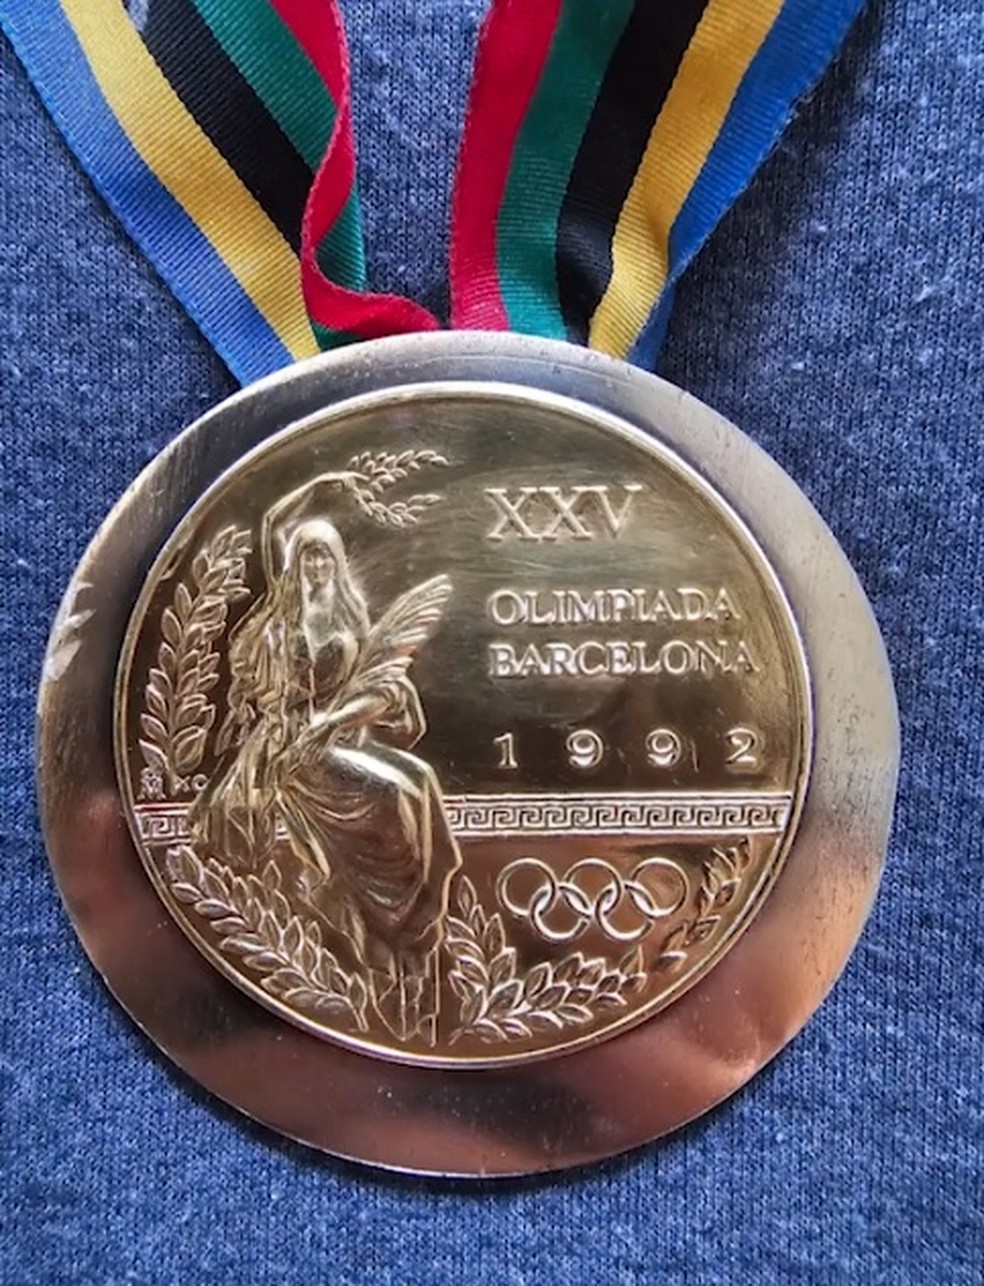 Colecionismo medalha ACRE clube VII olimpiada familiar